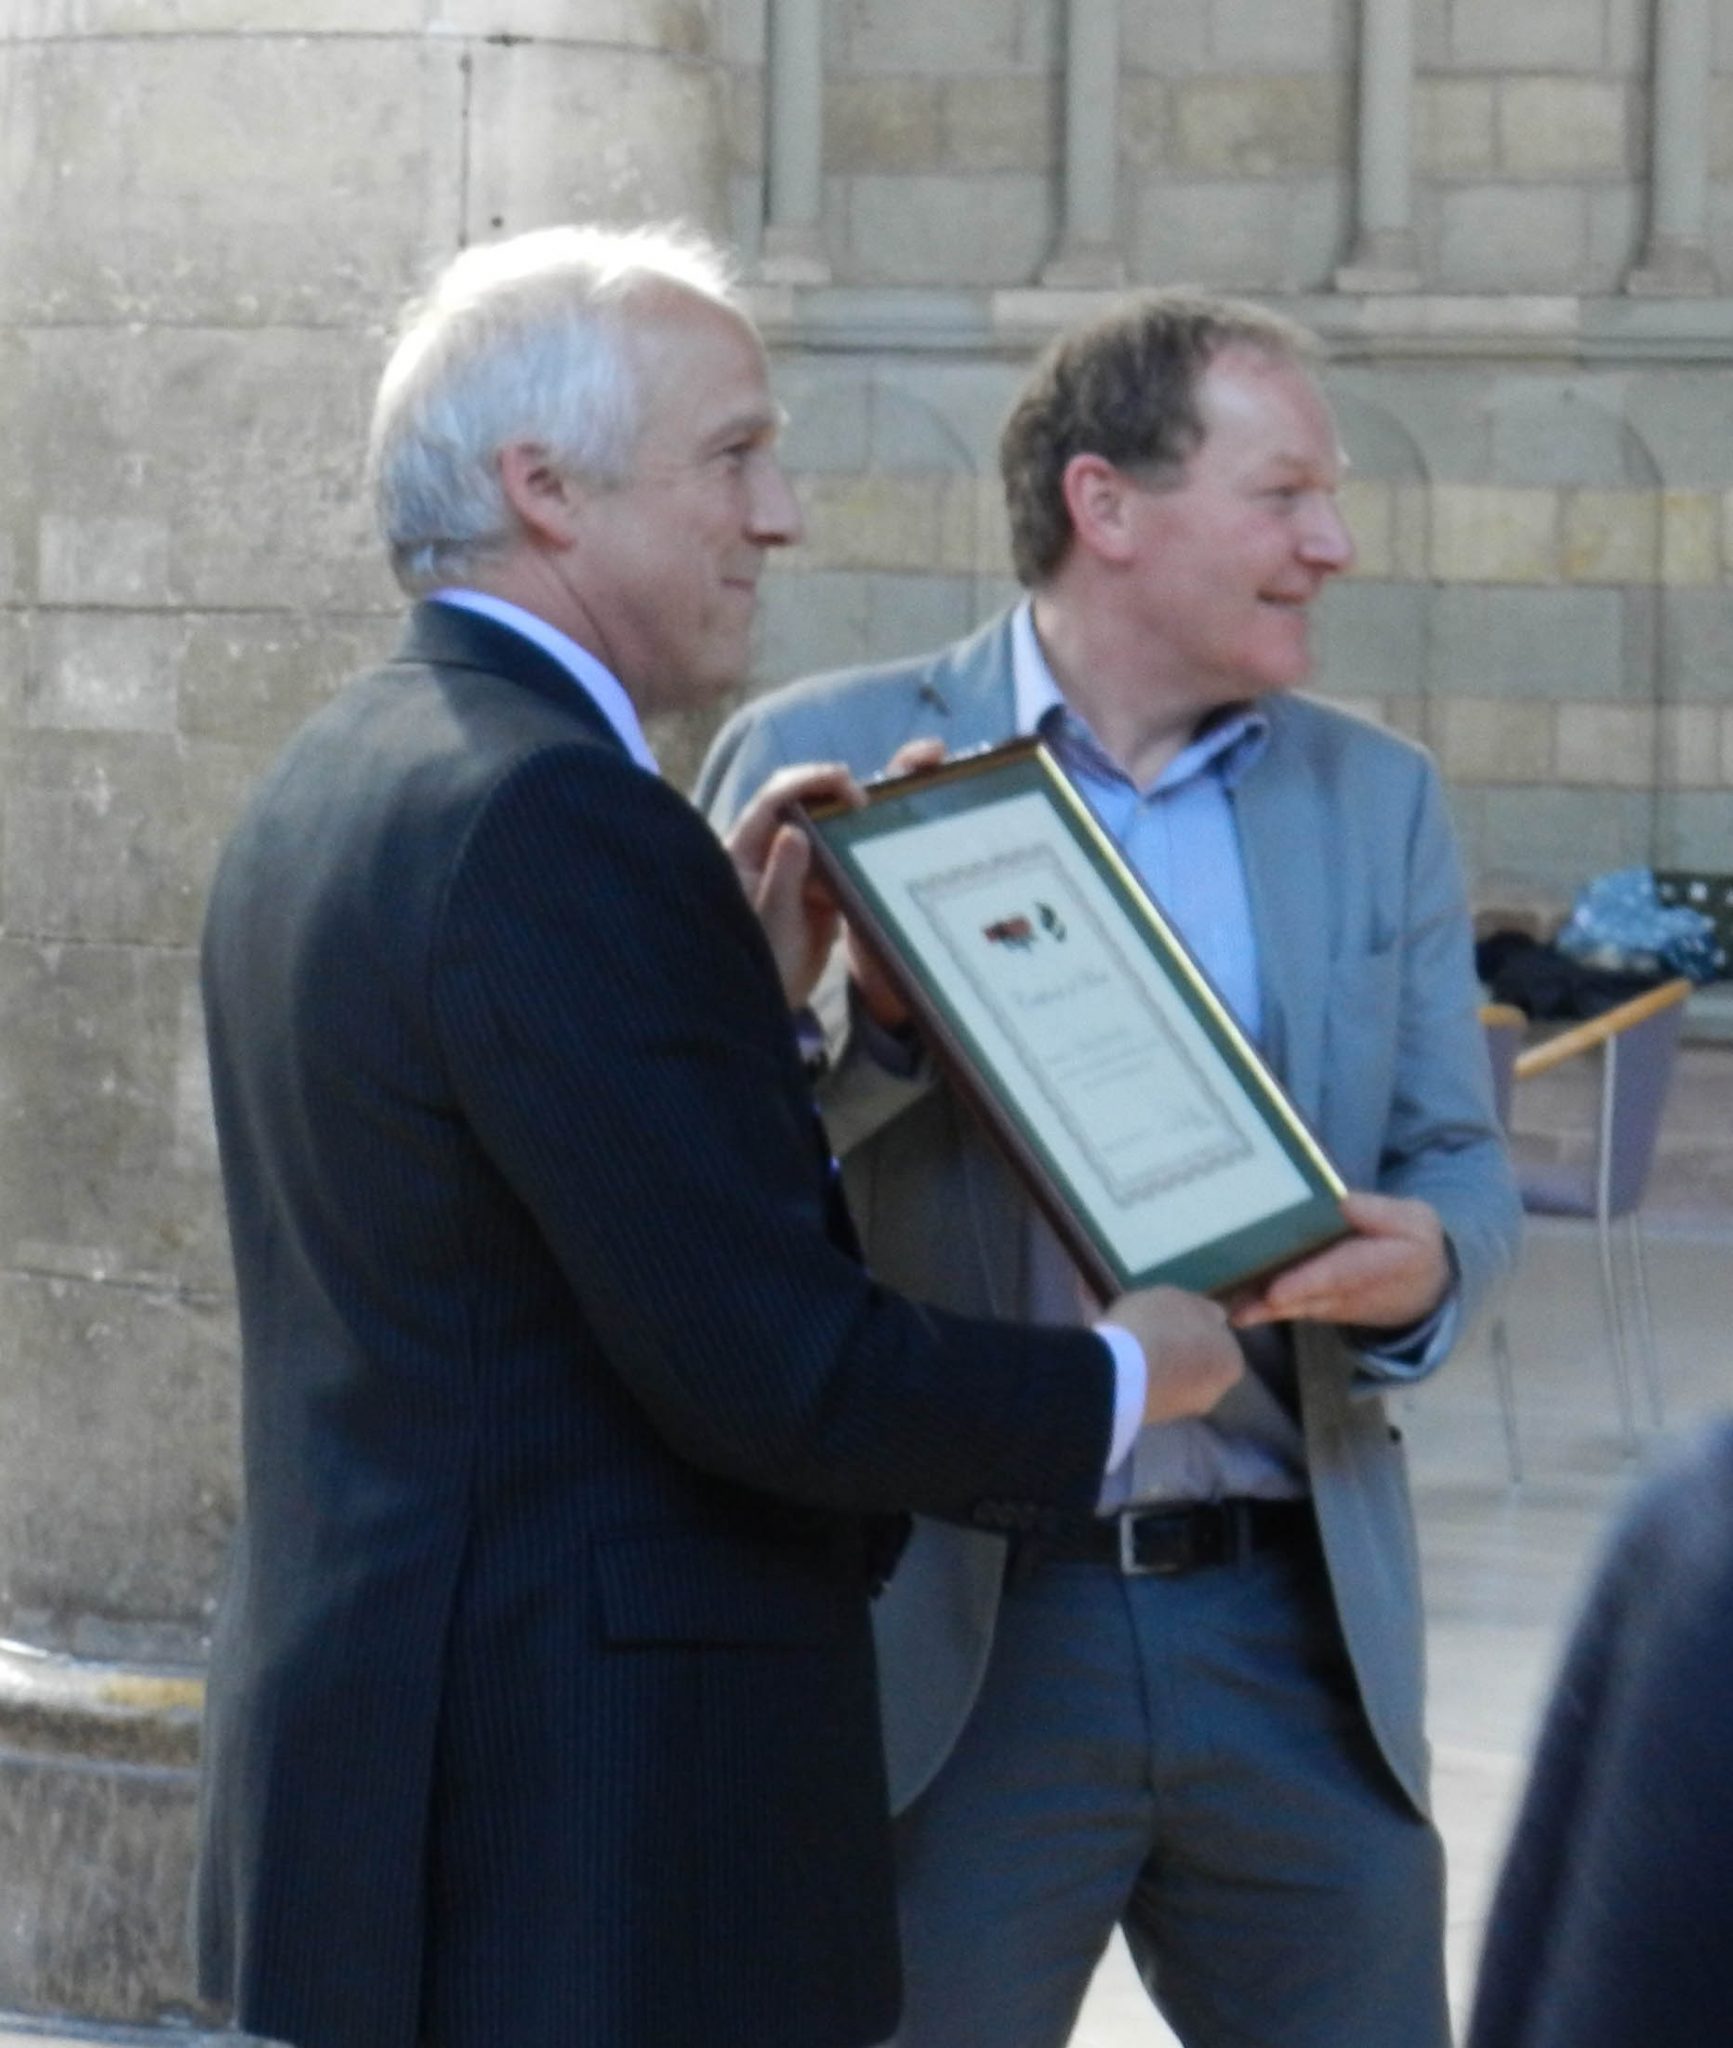 Chris Bennet awarded the Certificate of Merit